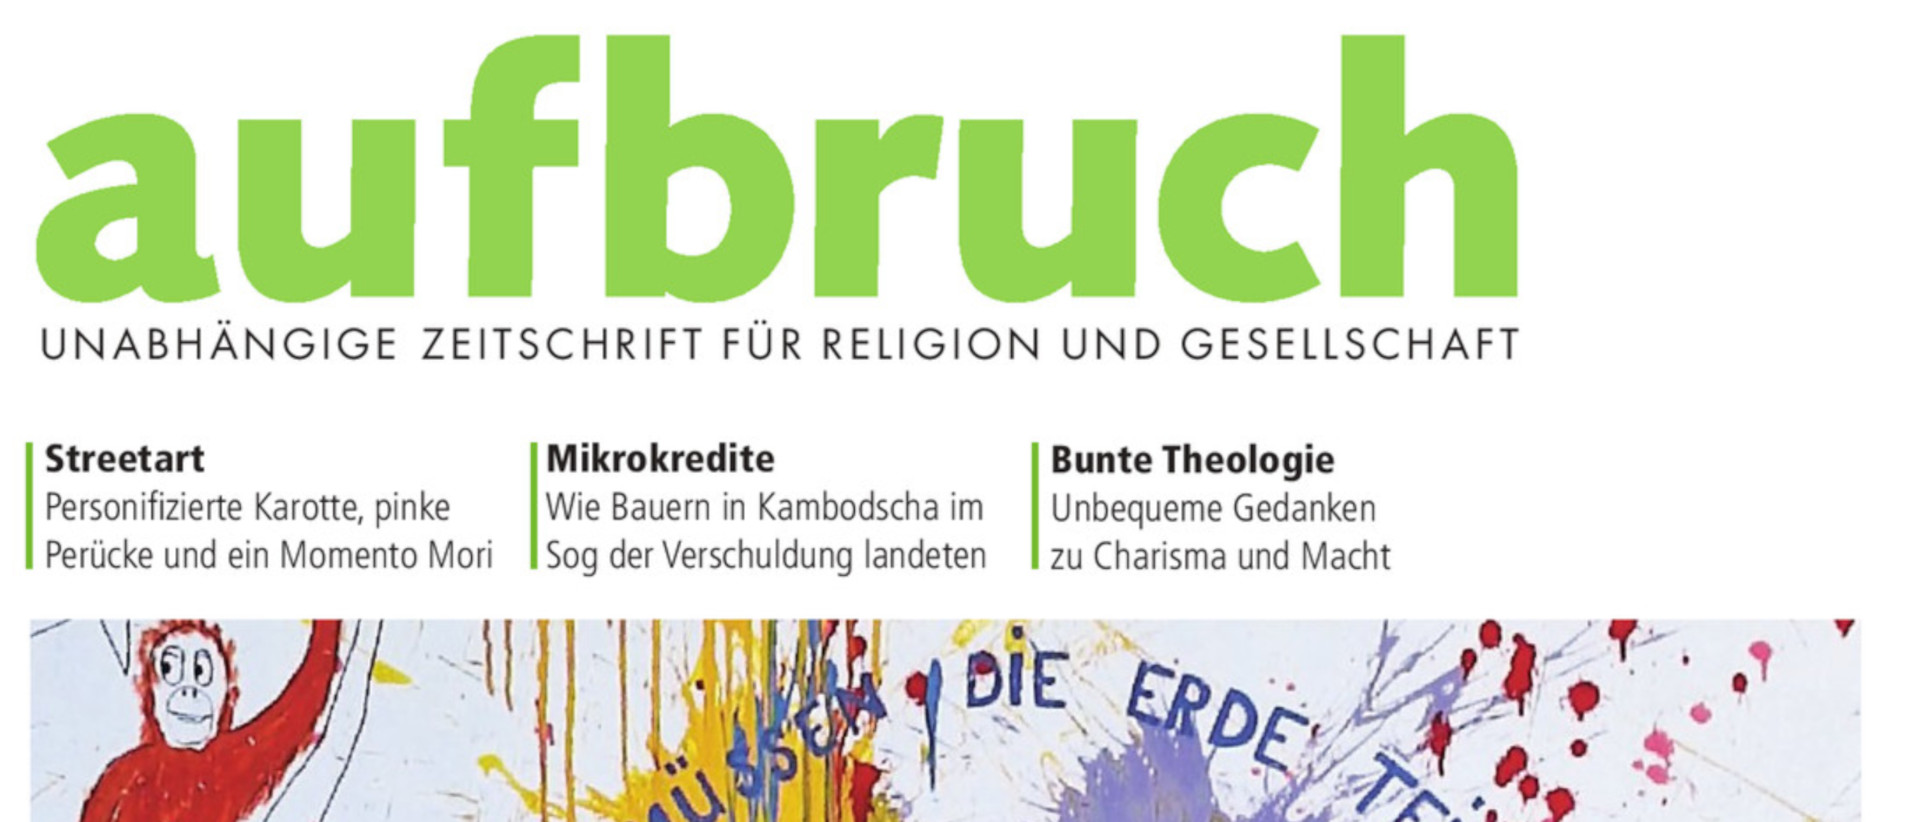 Cover der Zeitschrift "Aufbruch"